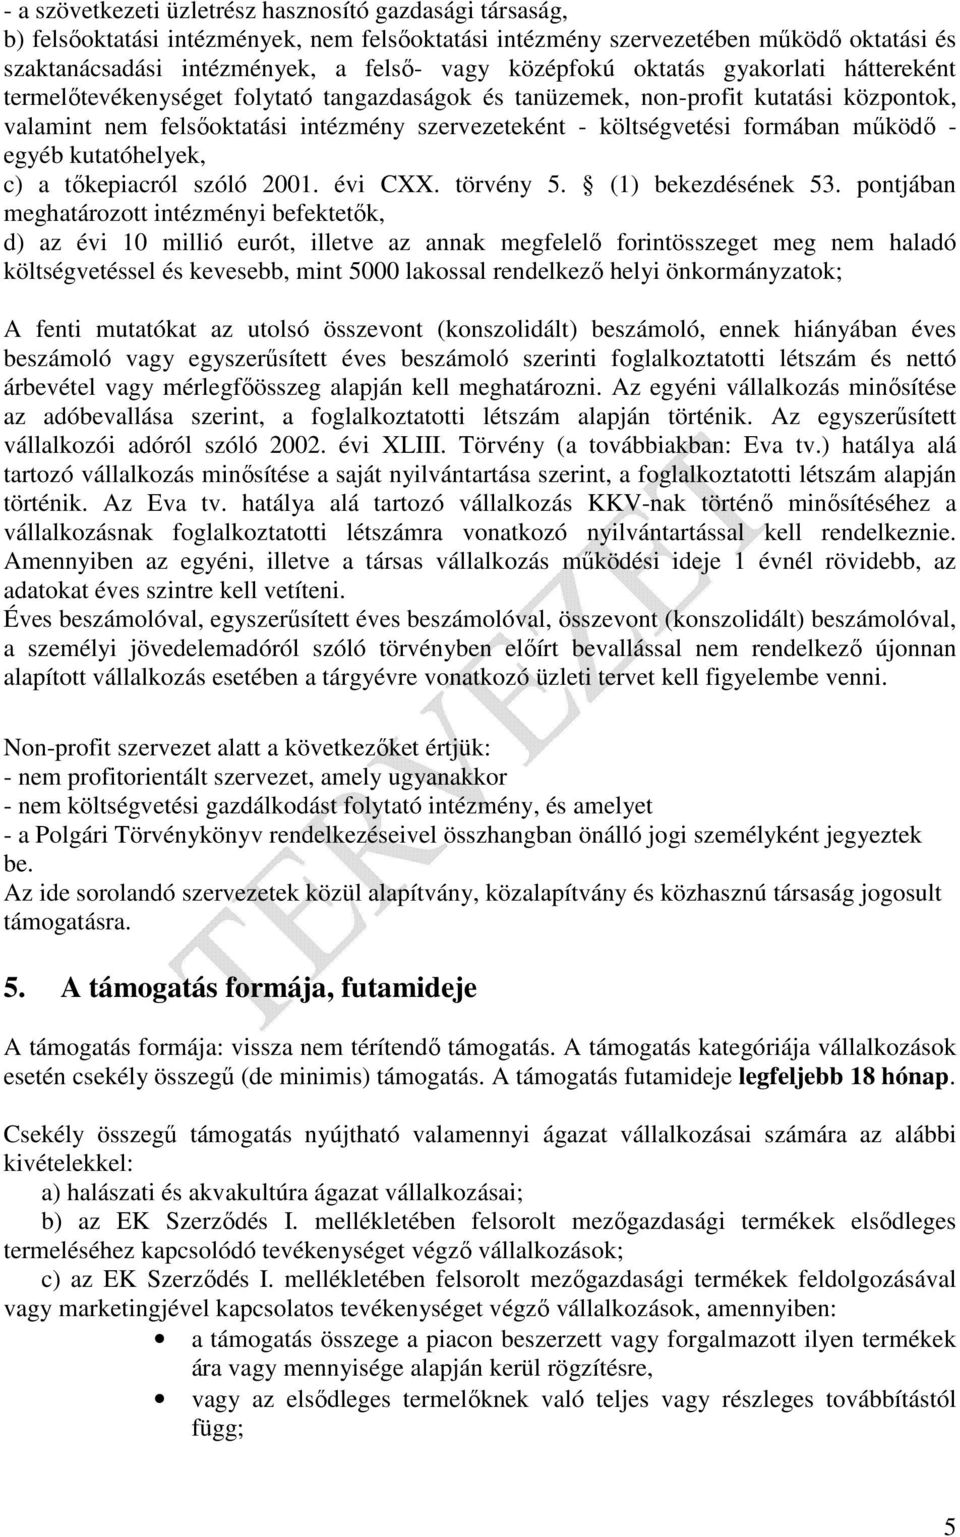 formában mőködı - egyéb kutatóhelyek, c) a tıkepiacról szóló 2001. évi CXX. törvény 5. (1) bekezdésének 53.